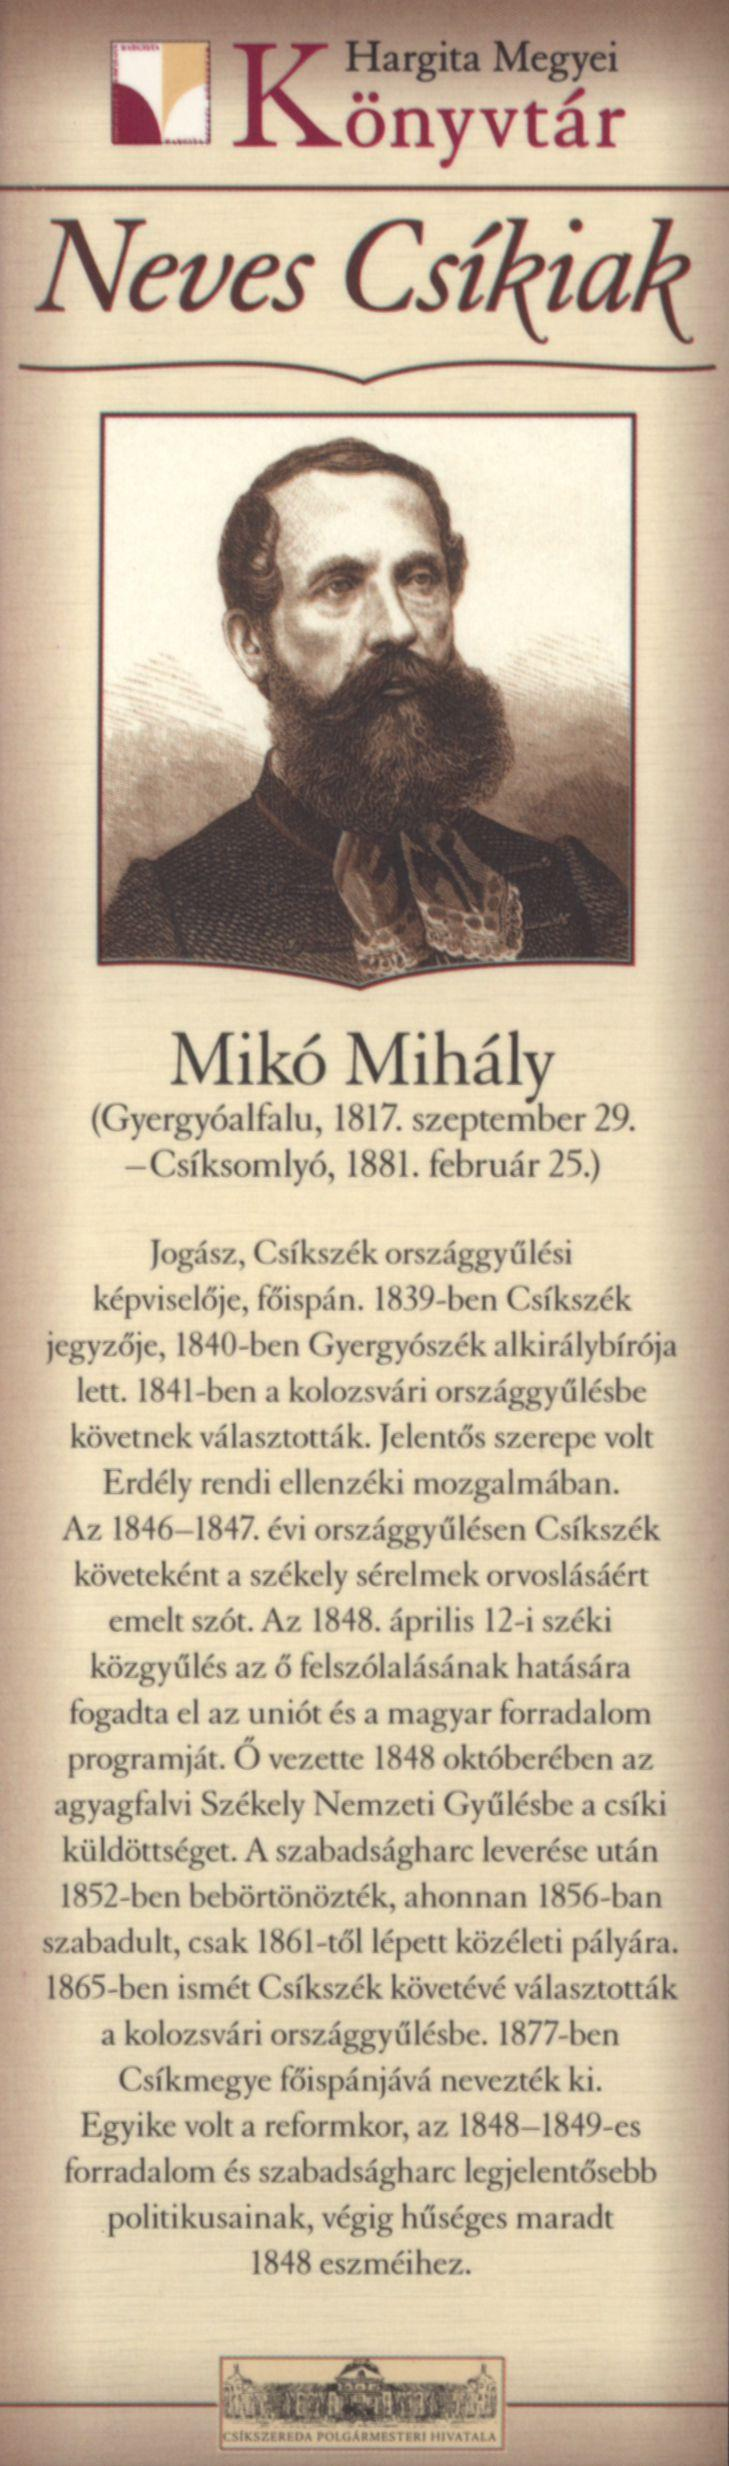 Mikó Mihály (Gyergyóalfalu, 1817. szeptember 29. -Csíksomlyó, 1881. február 25.) Jogász, Csíkszék országgyűlési képviselője, főispán.